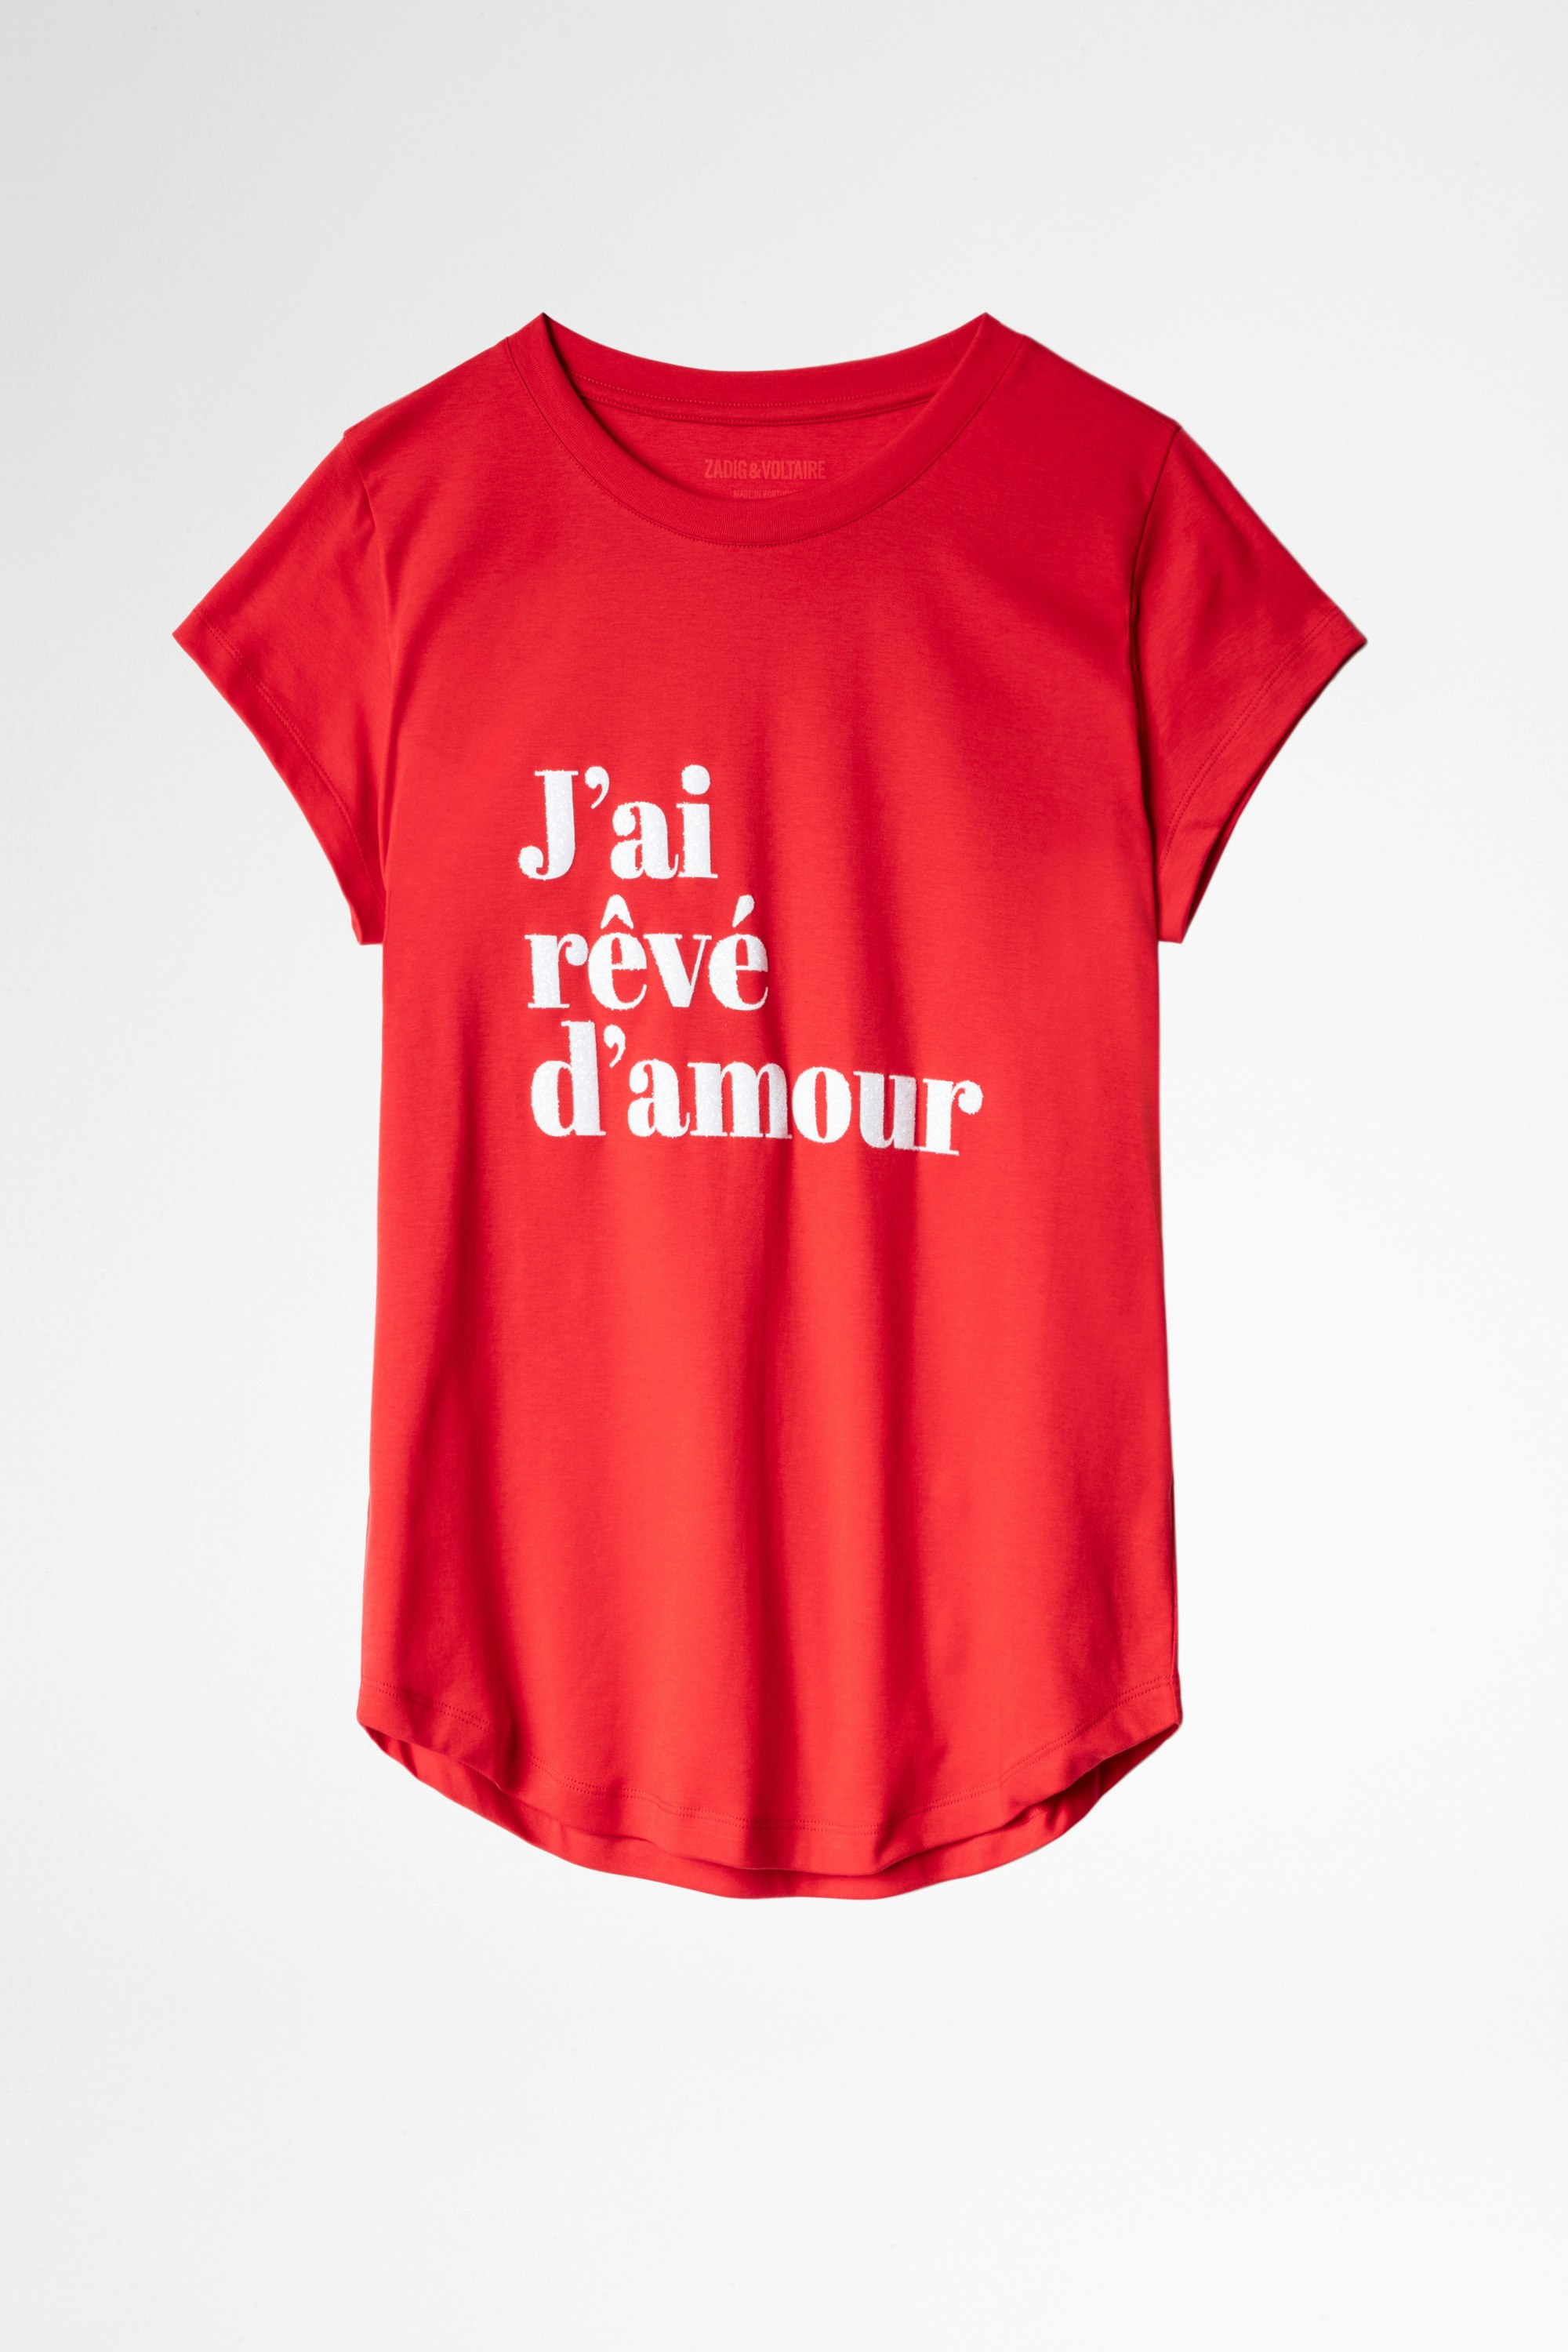 Camiseta Woop Camiseta roja de mujer con mensaje «J'ai rêvé d'amour»